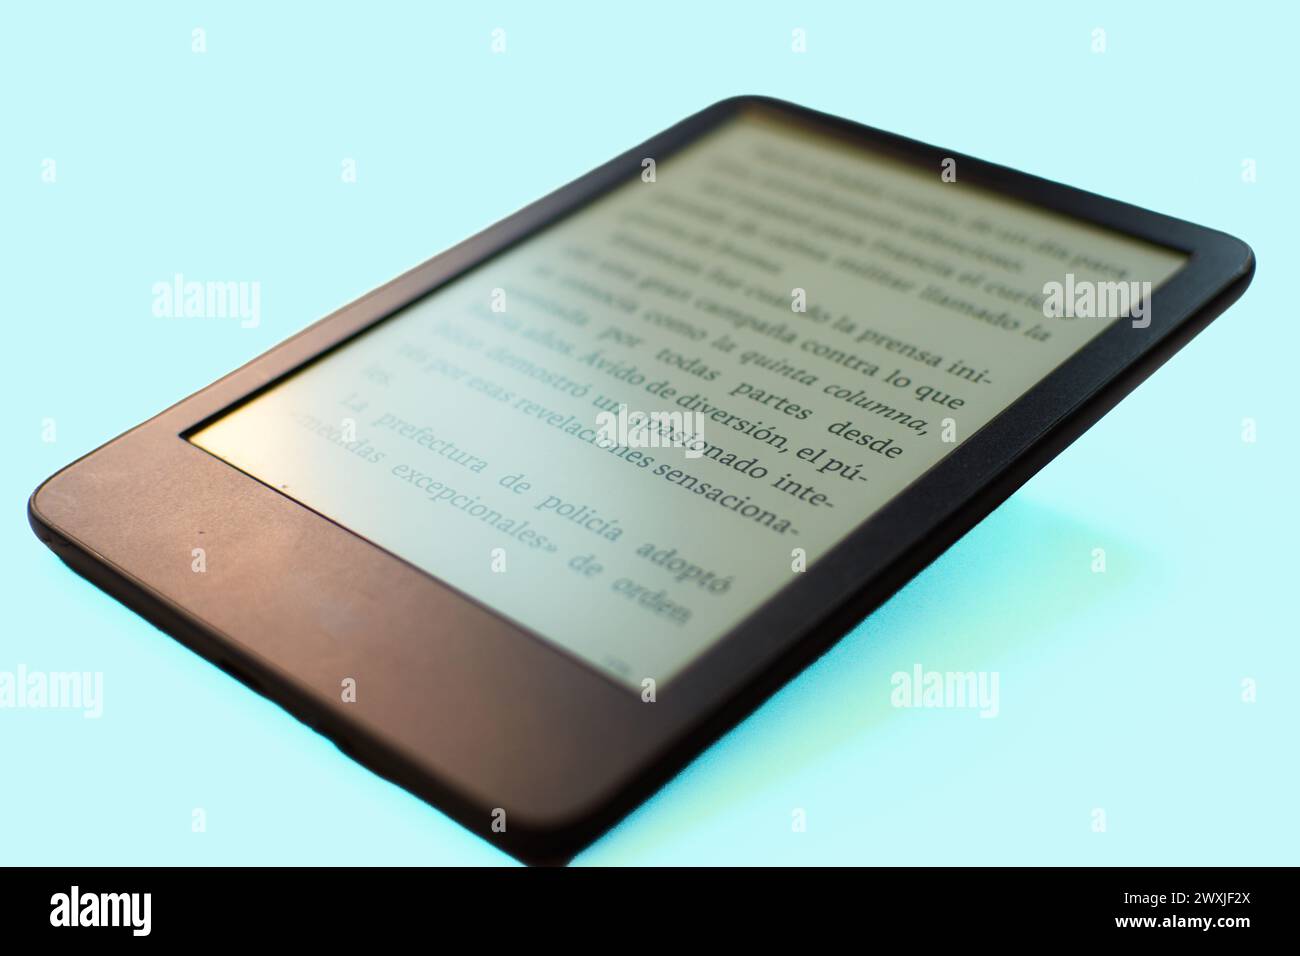 Öffnen Sie das elektronische Buch, das auf einem Tisch liegt und für jemanden bereit ist, es zu lesen Stockfoto